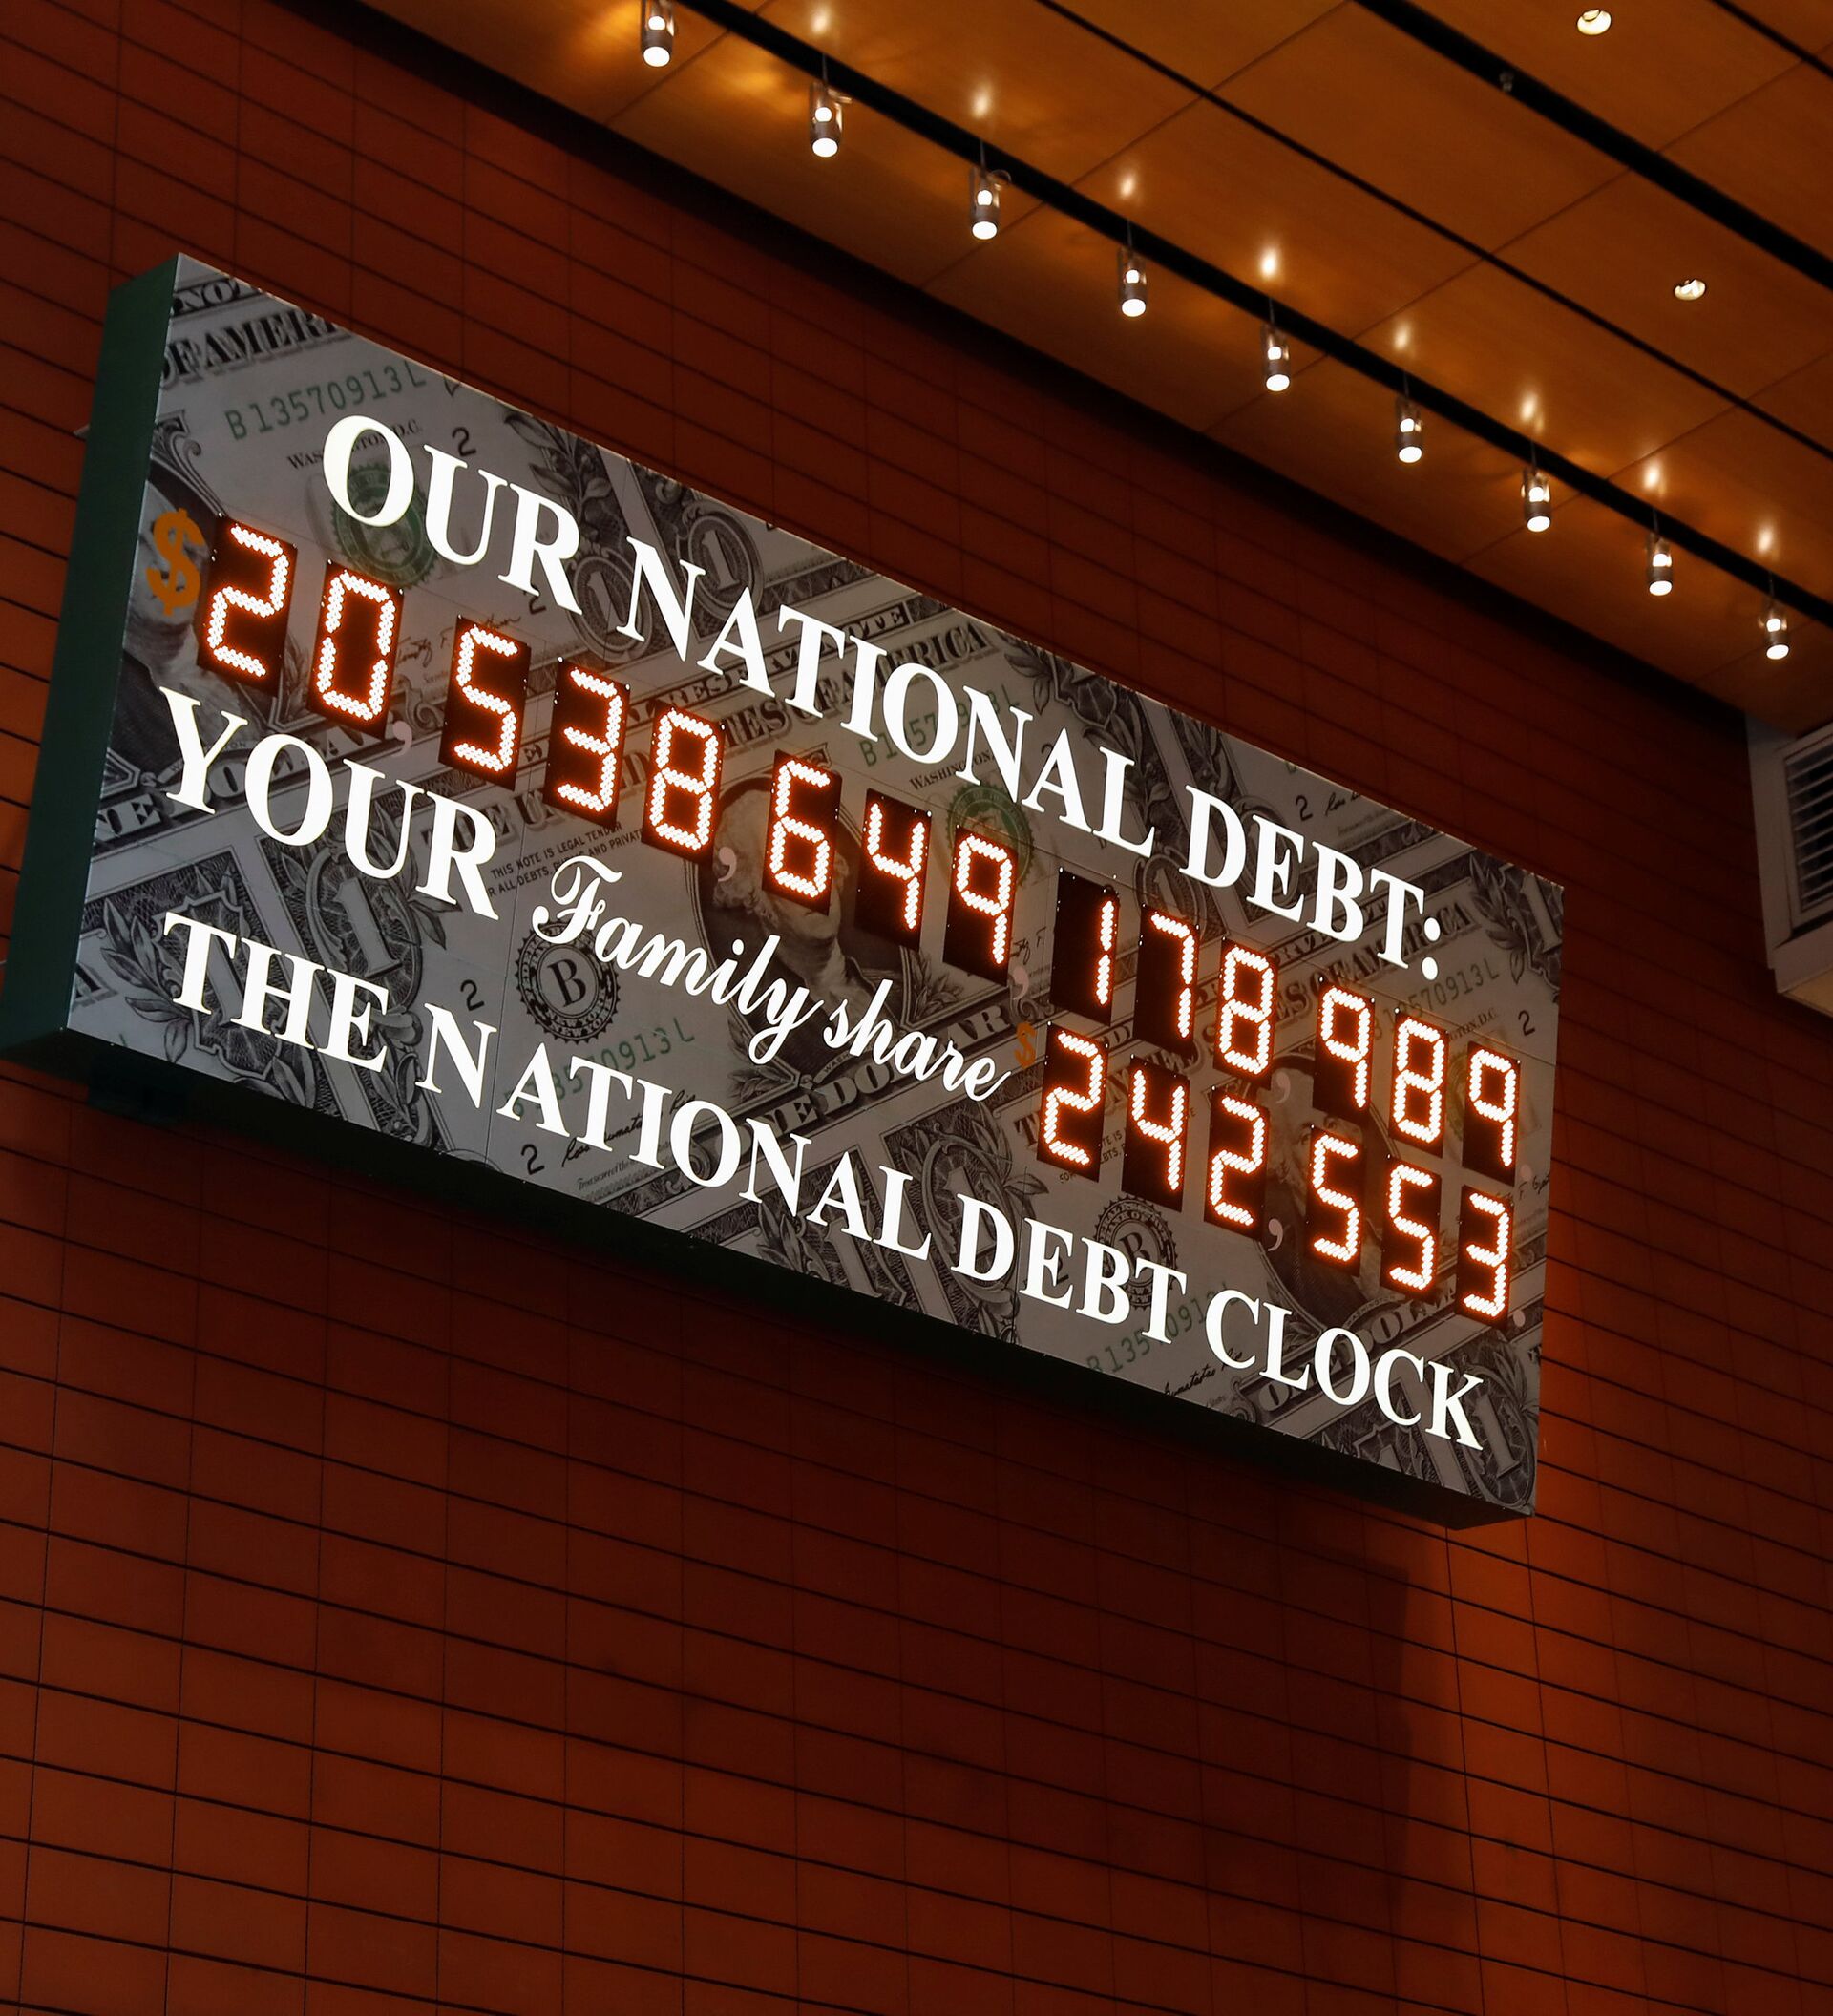 Счетчик долгов в реальном времени. Счётчик национального долга США. Табло долга США. Табло госдолга США. Табло национального долга США.